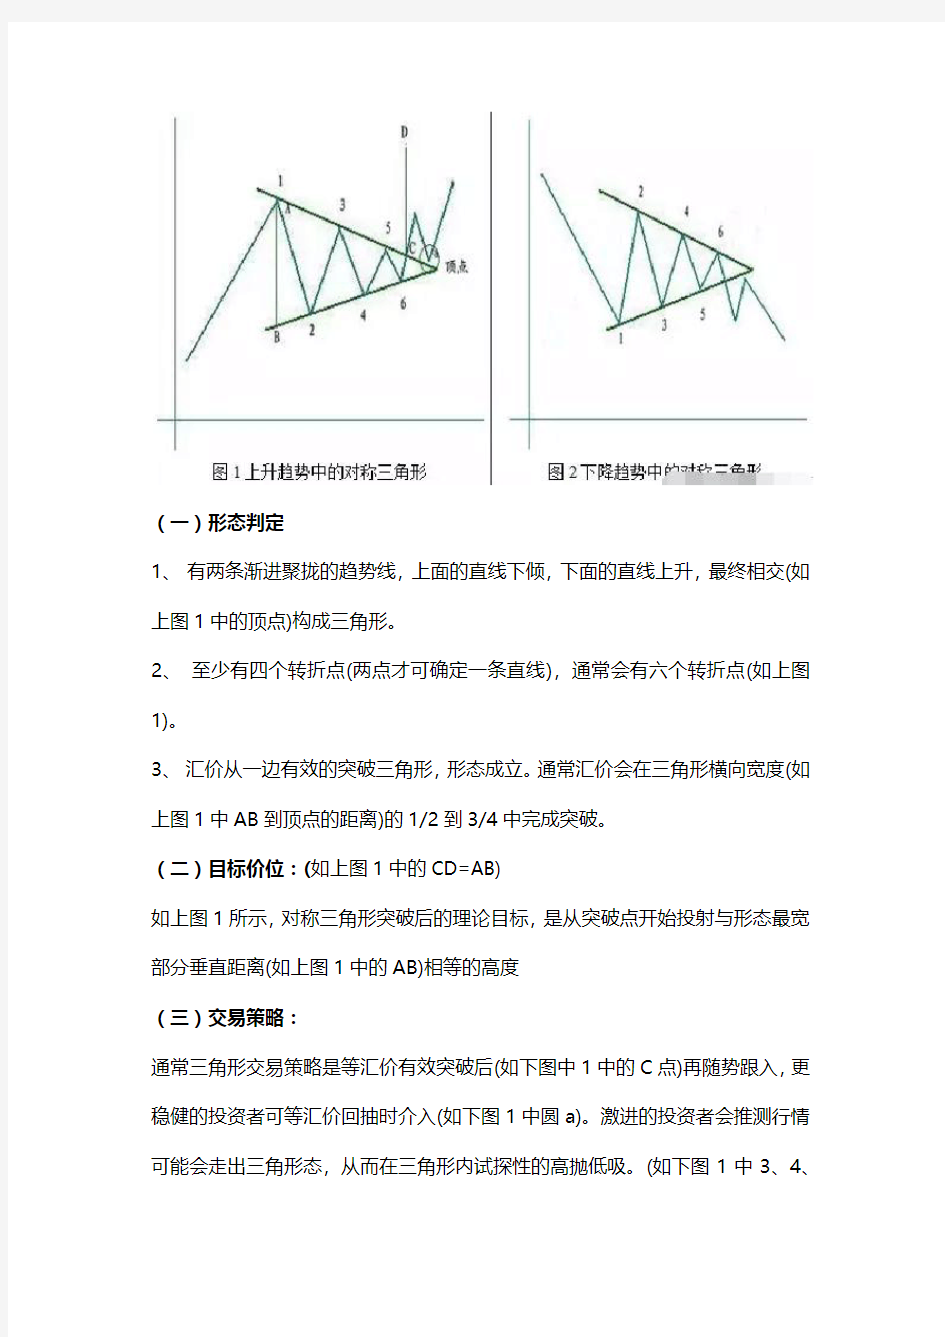 奥富盛尊尚AZCapital外汇交易学习形态分析“持续型形态“之三角形态